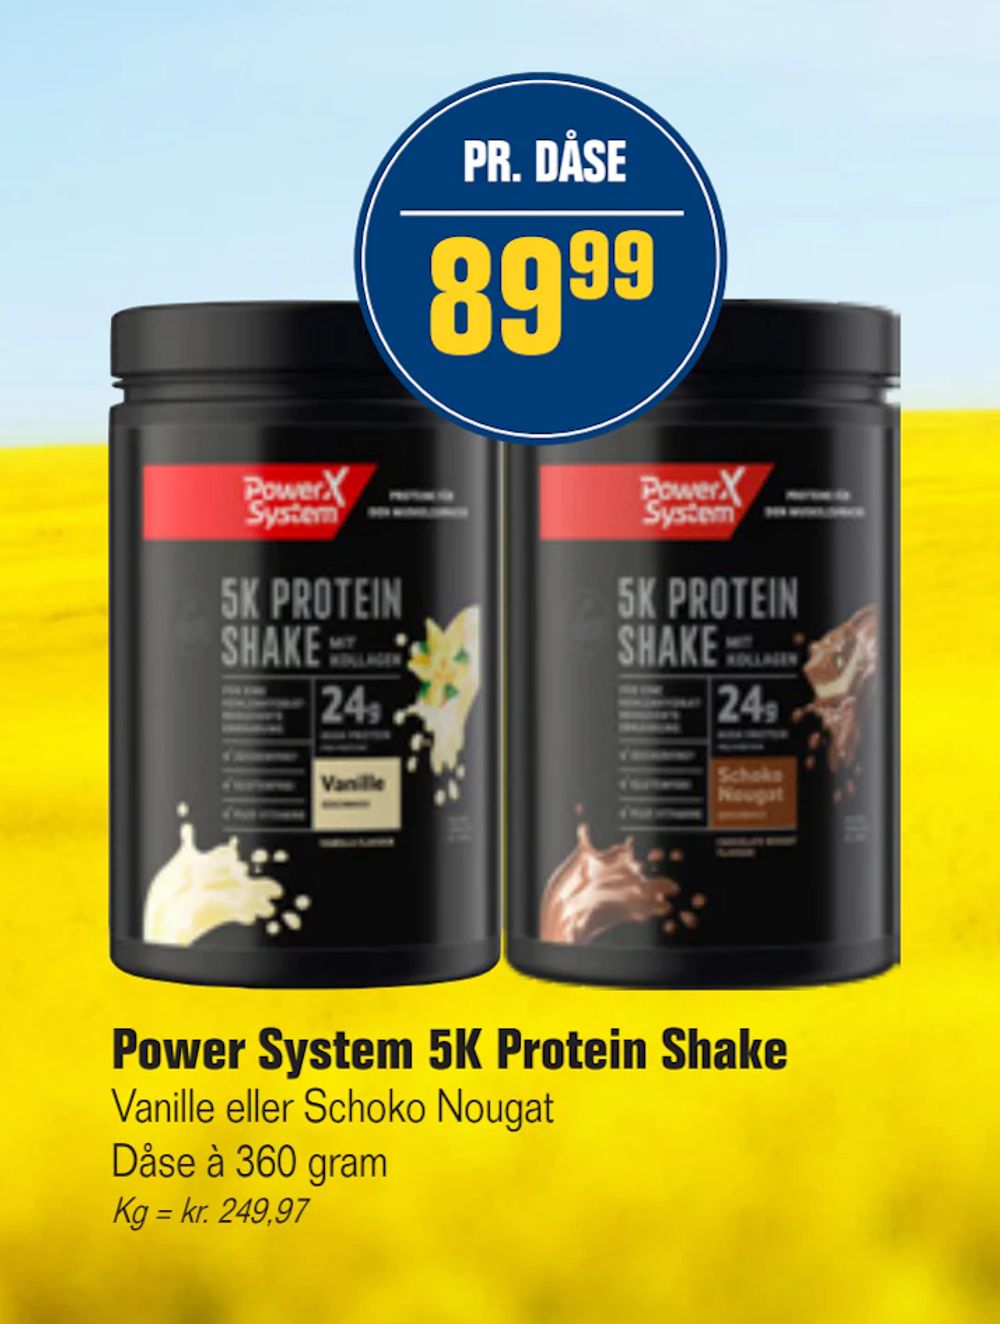 Tilbud på Power System 5K Protein Shake fra Otto Duborg til 89,99 kr.